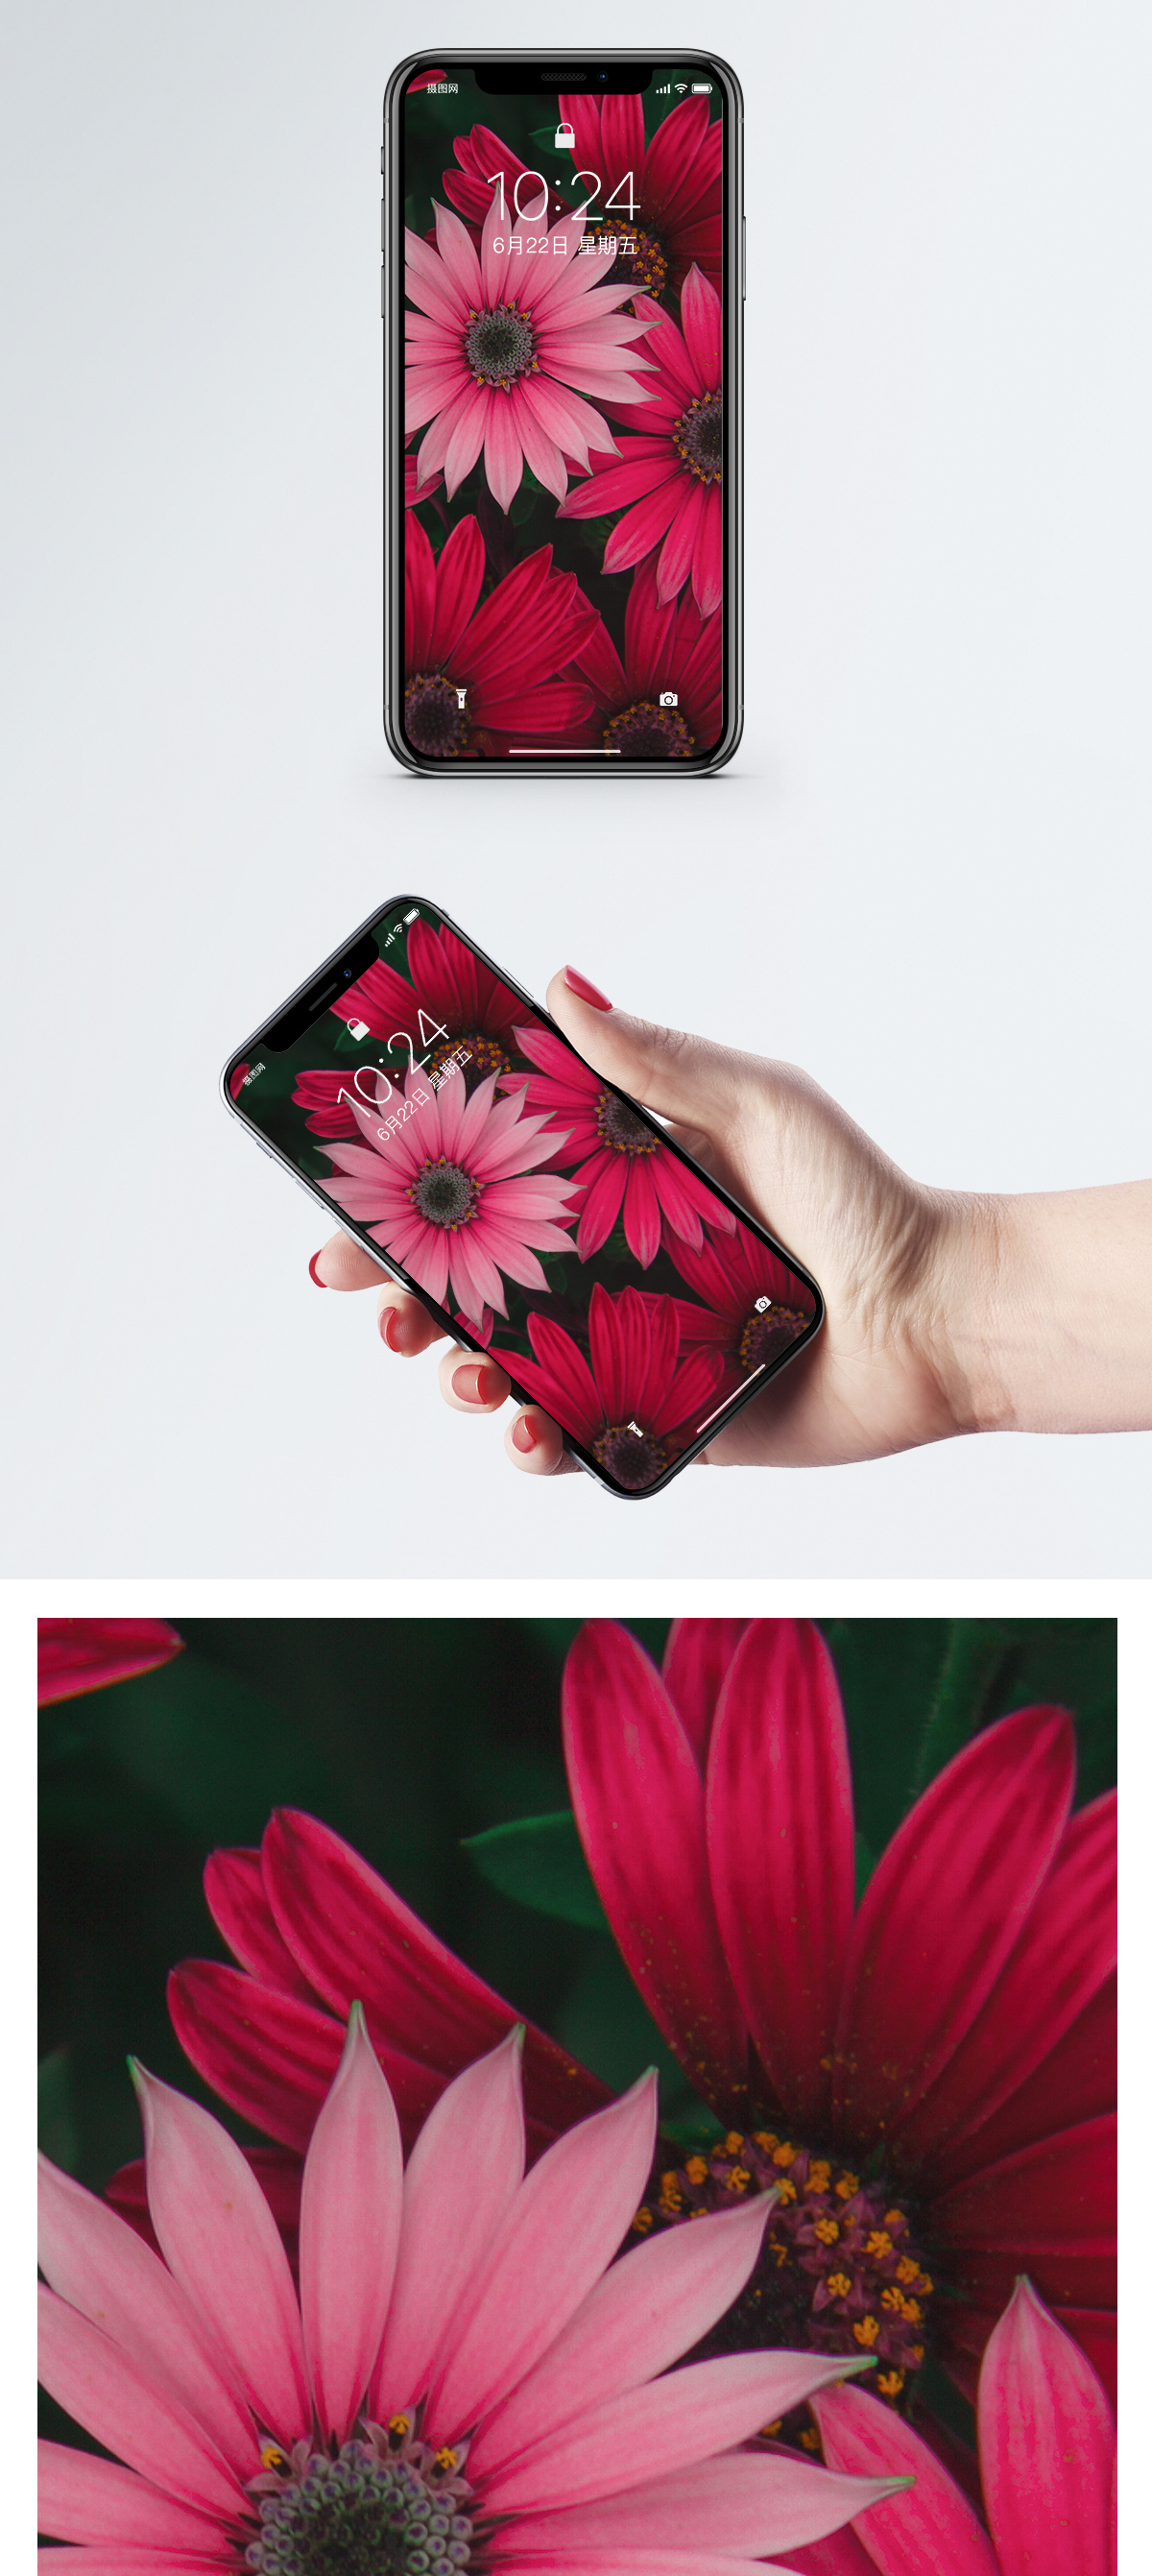 Red Flower Mobile Wallpaper Photo - Flower Mobile Wallpaper Hd , HD Wallpaper & Backgrounds